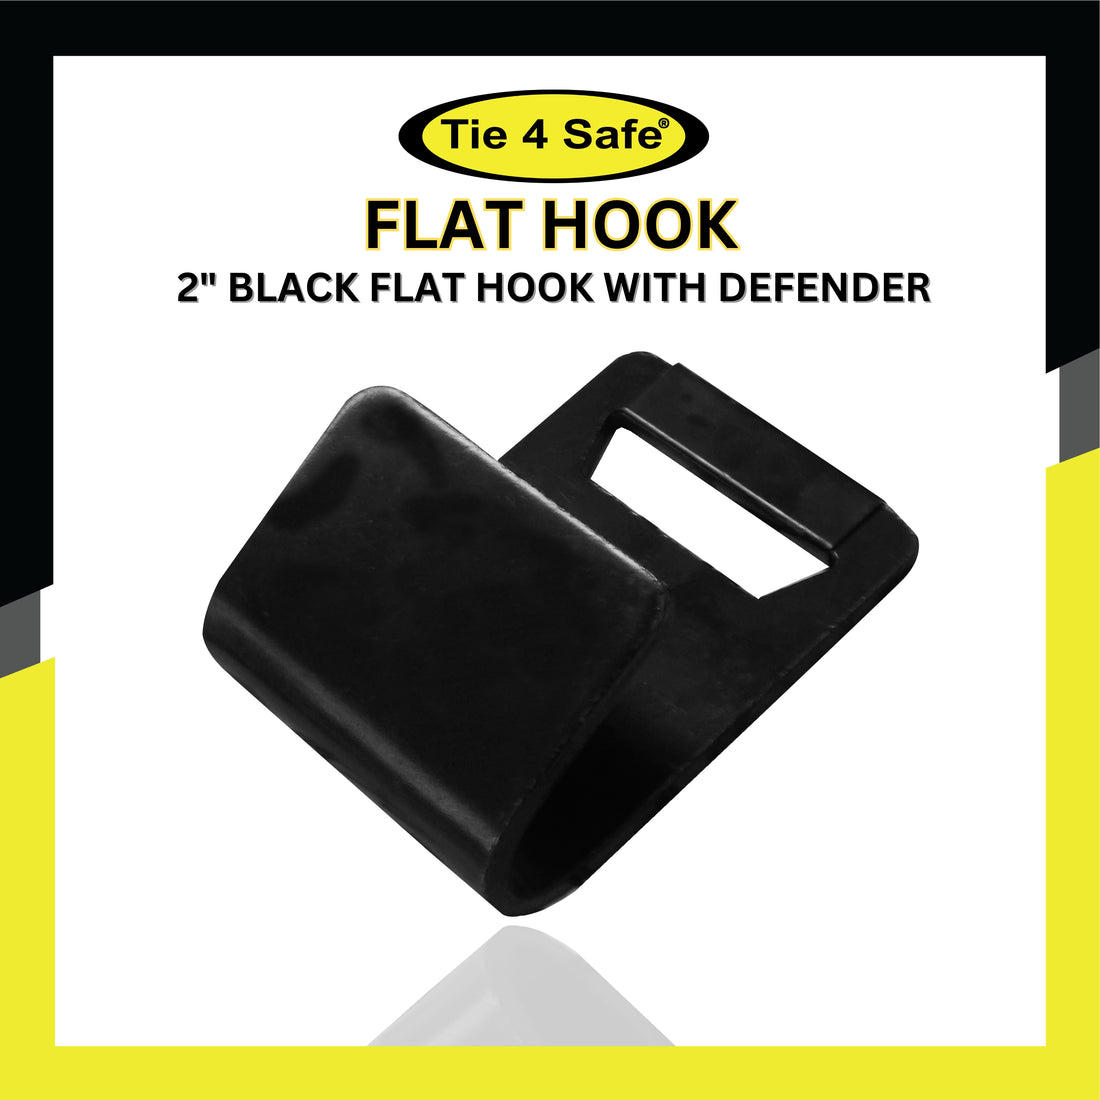 2" Black Flat Hook With Defender